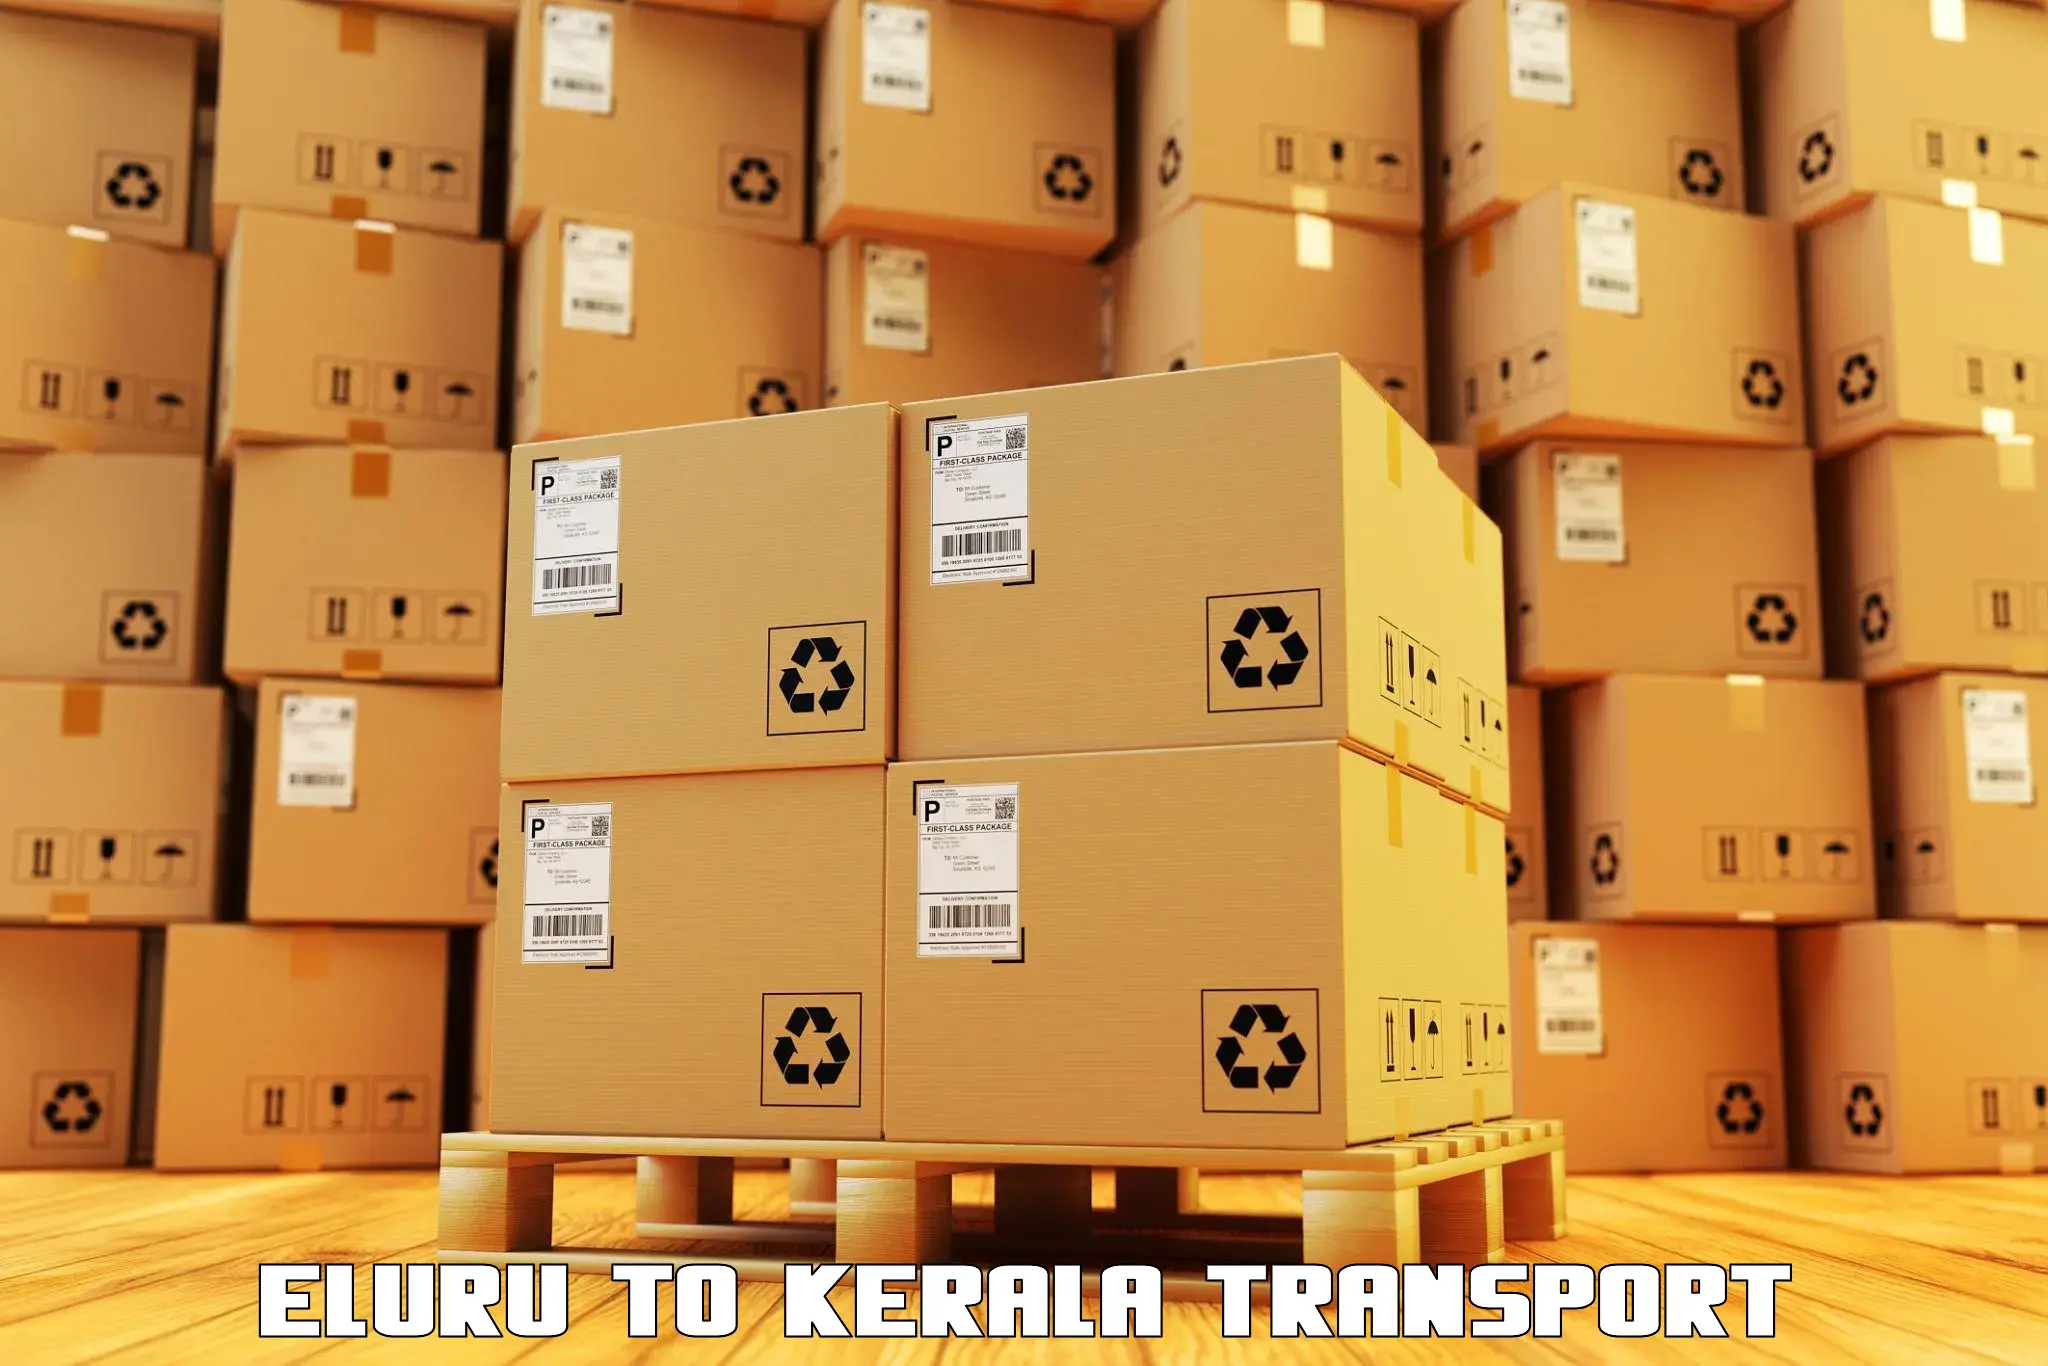 Online transport service Eluru to Akaloor